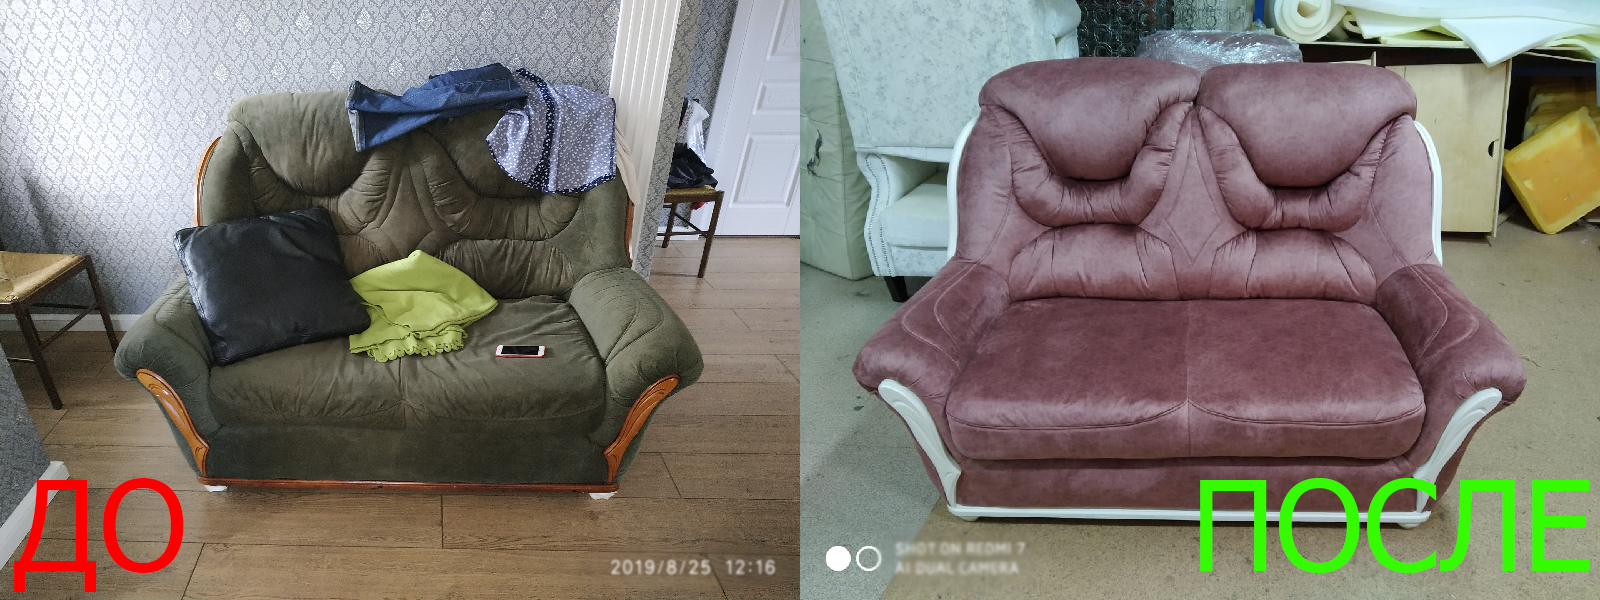 Ремонт диванов в Казани на дому и с вывозом - разумные цены на услуги